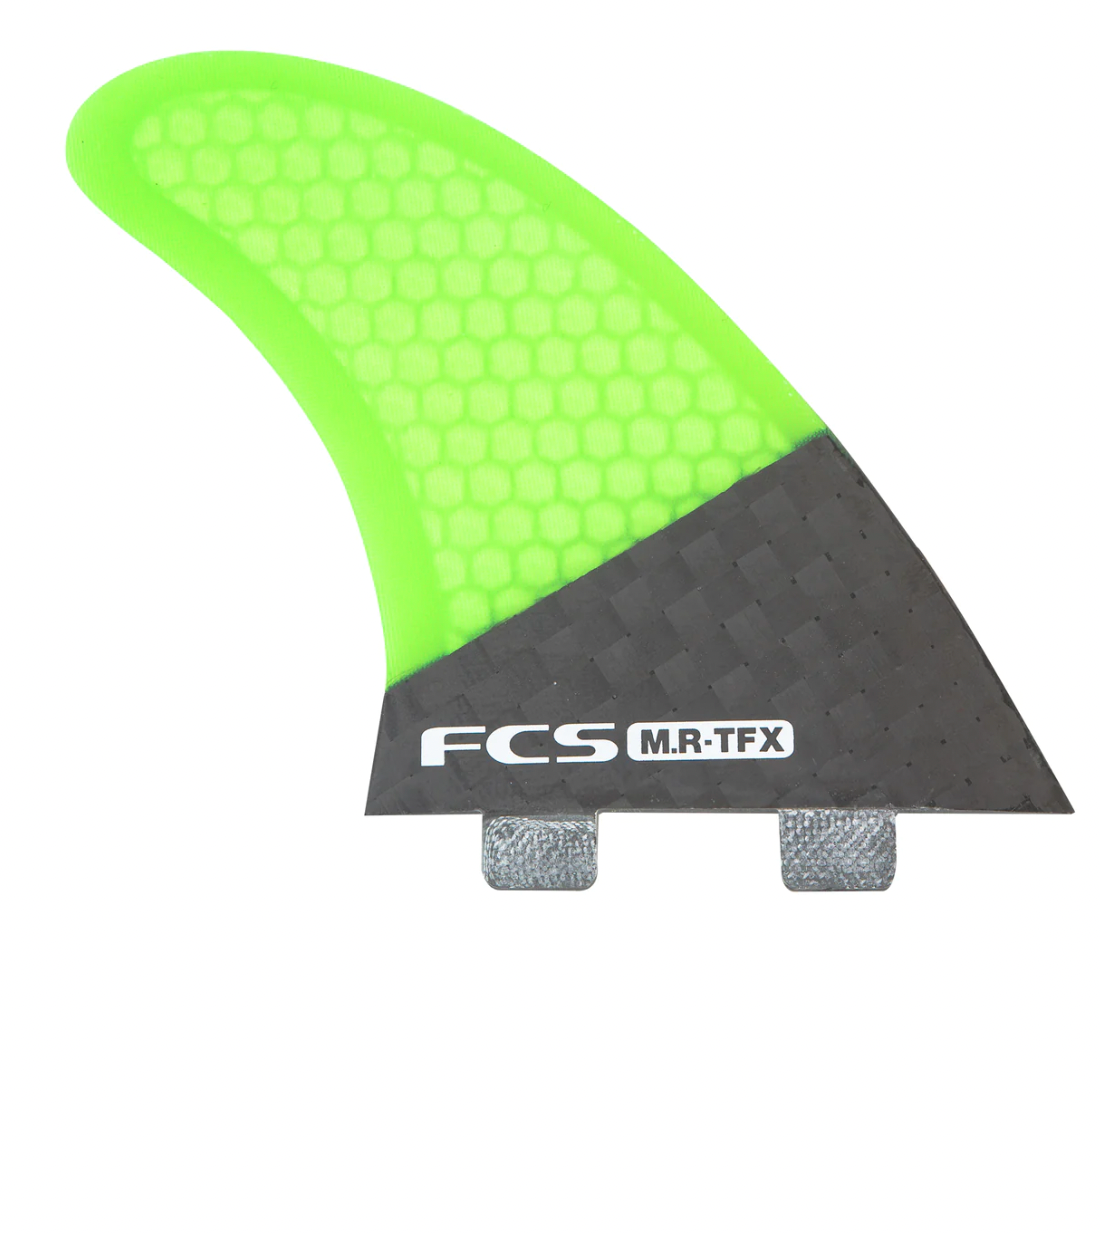 FCS MR-TFX PC Carbon Fluro Tri Fins